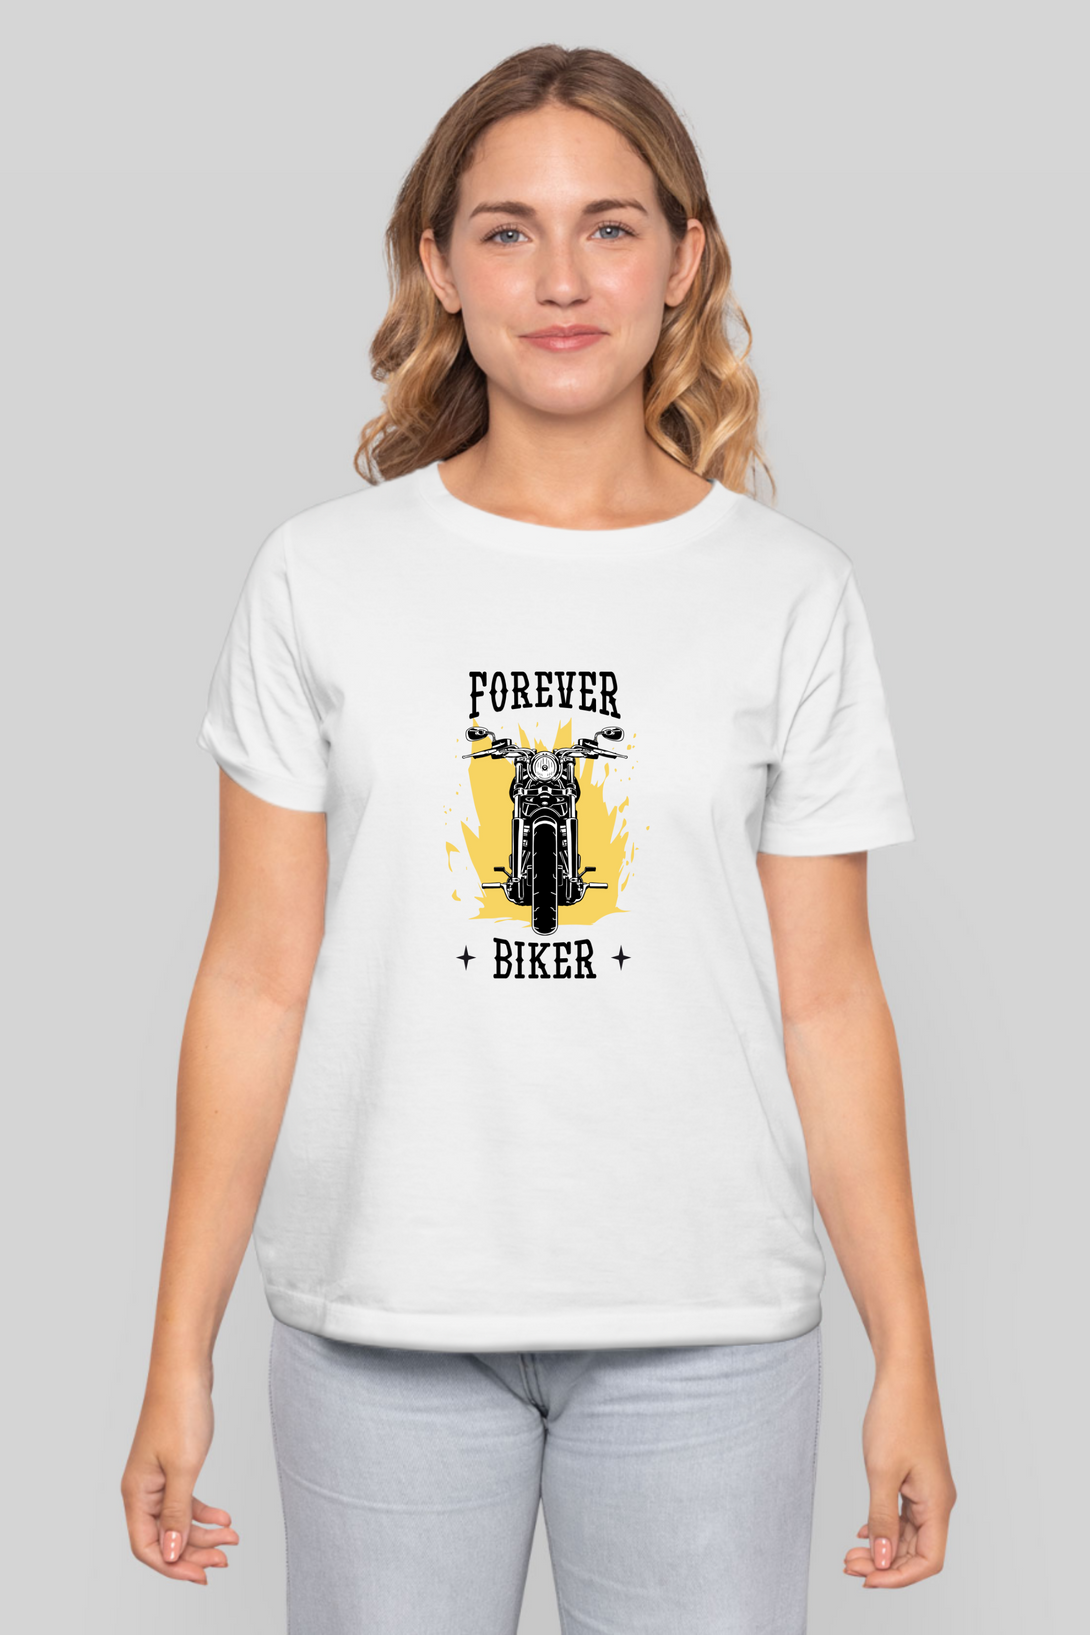 Forever Biker Printed T-Shirt For Women - WowWaves - 7